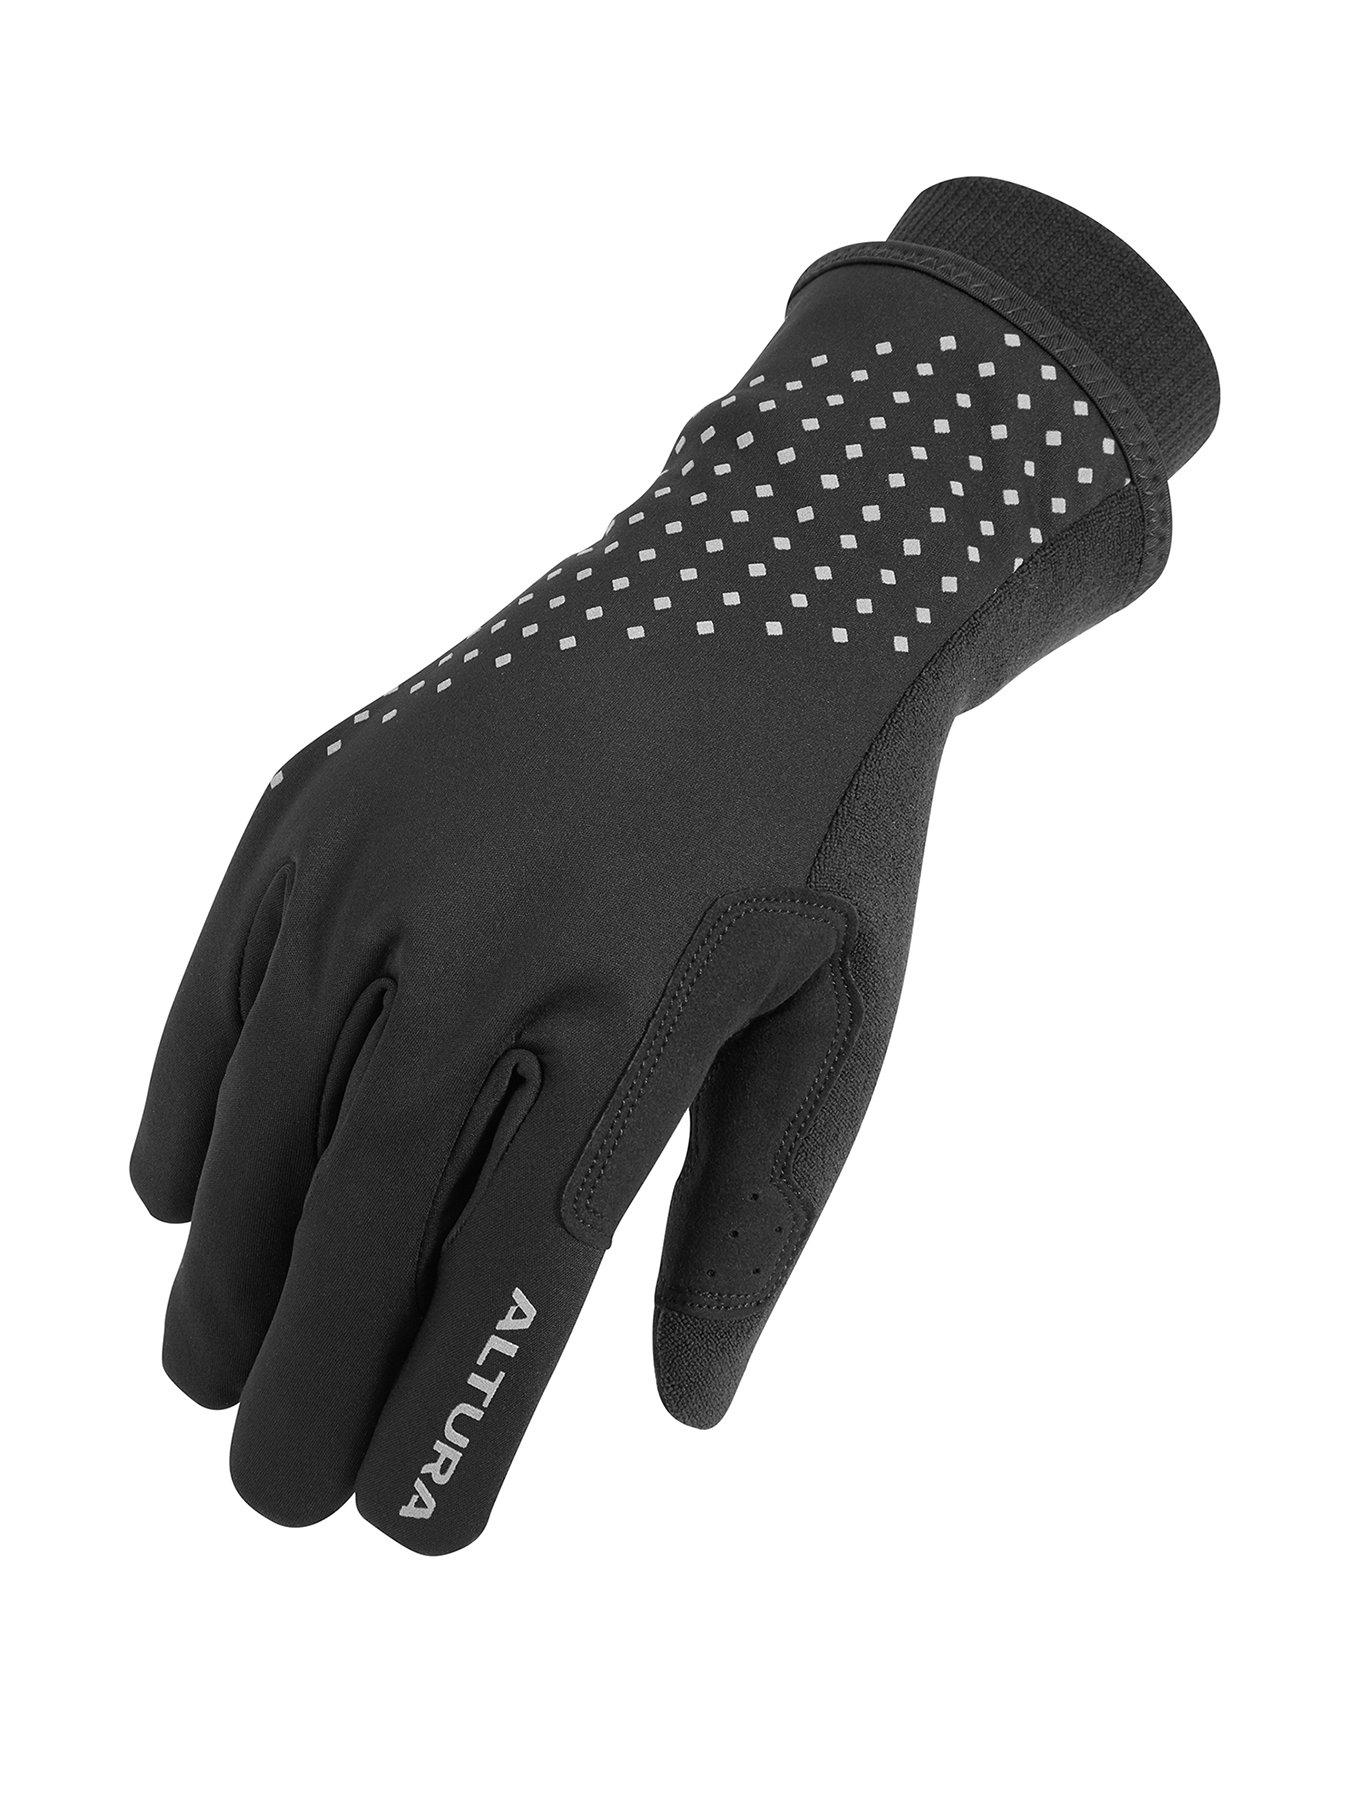 Tow Grip 101 Cotton Palm Accessories Gloves & Mittens Gardening & Work Gloves Work Gloves for Men 